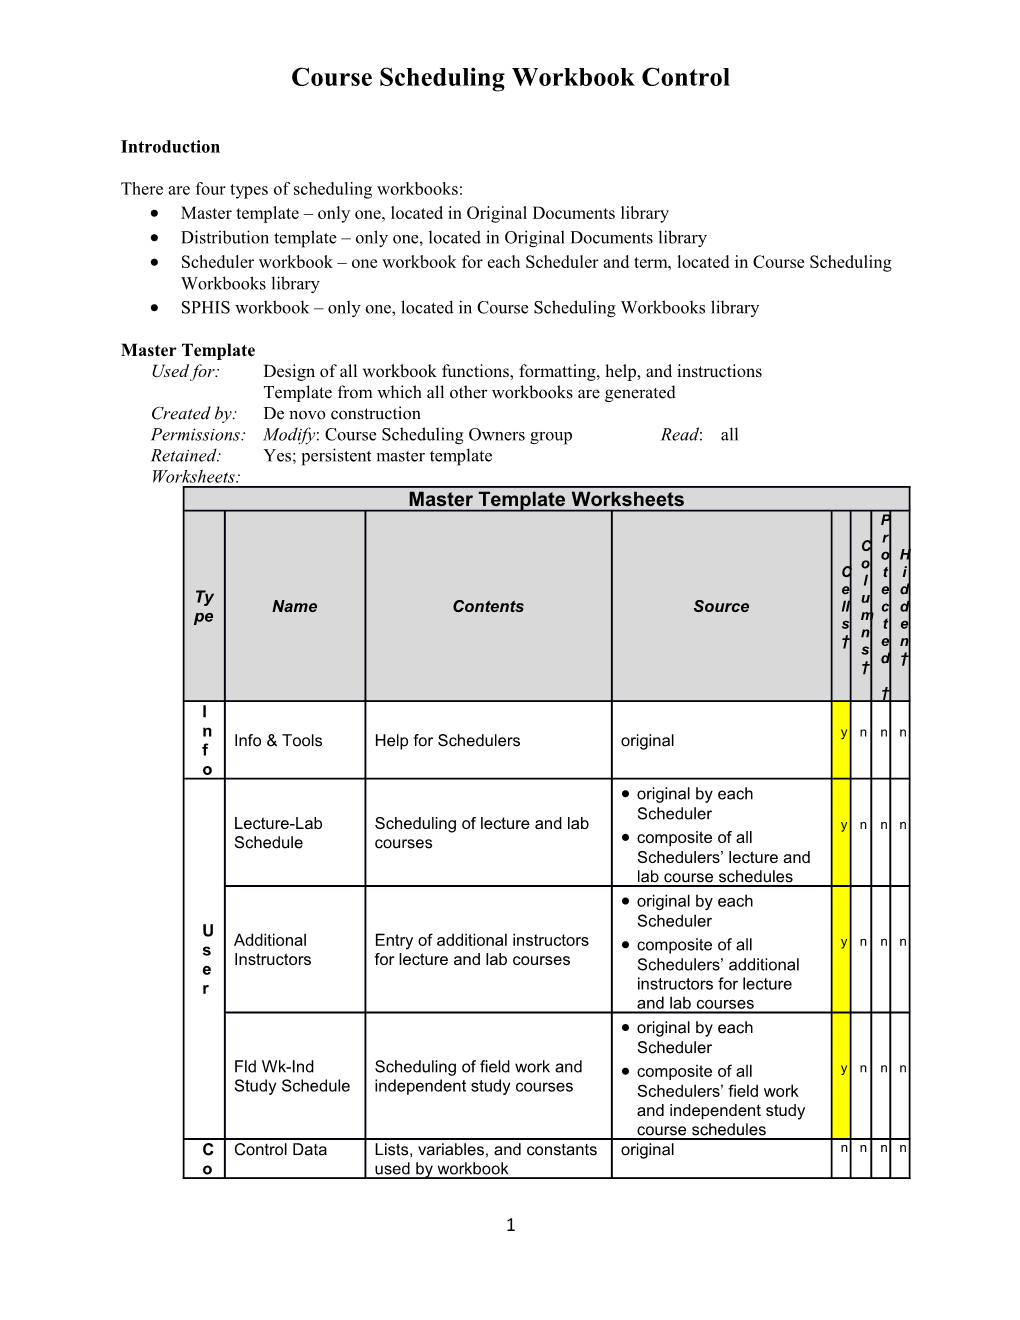 Scheduling Workbook Control, Version 1